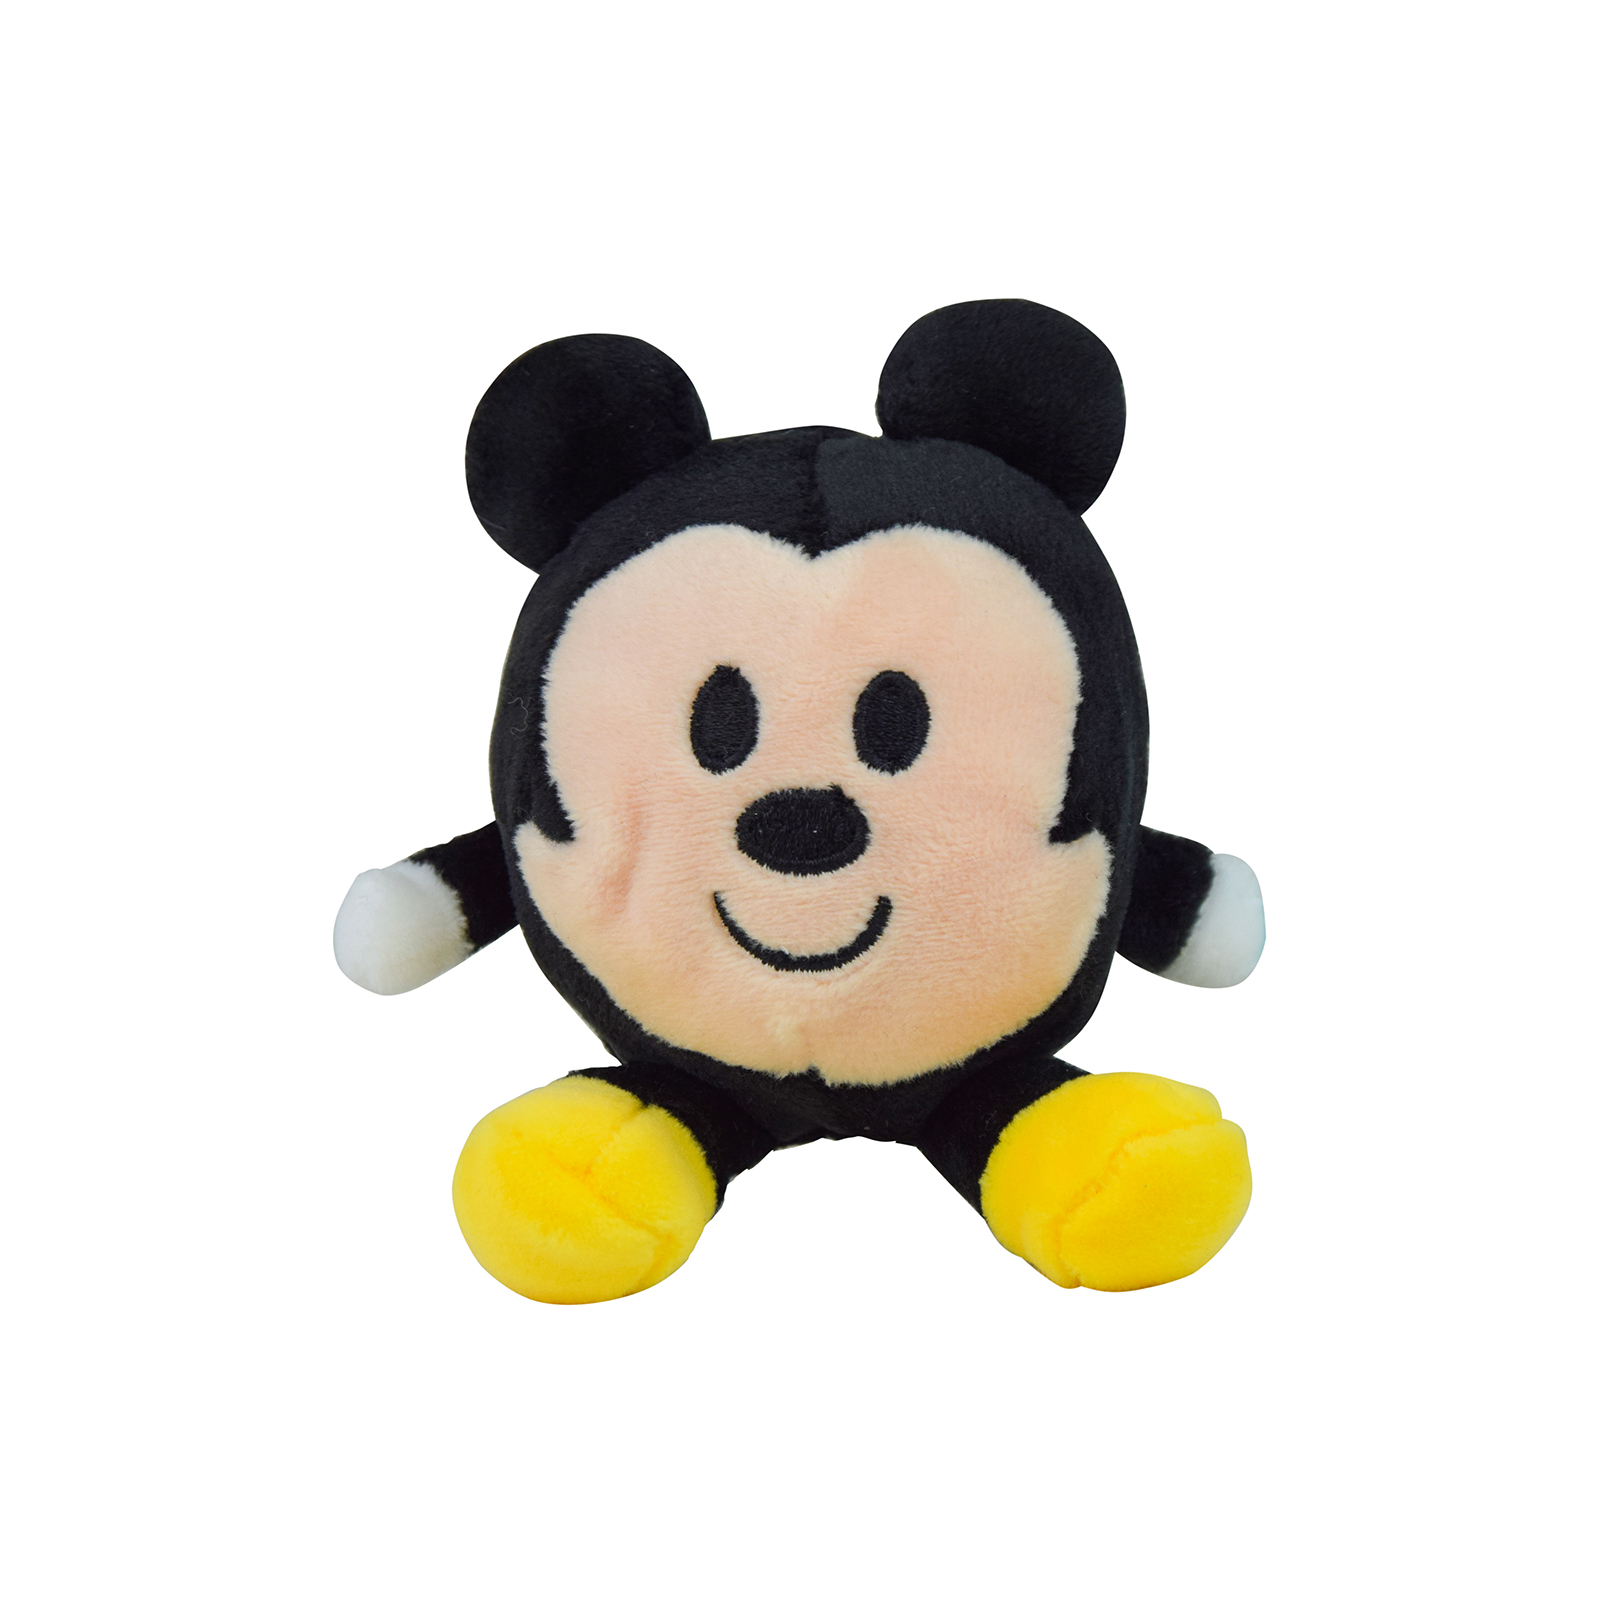 М'яка іграшка Disney Міккі Маус 8 см (PDP1800189)